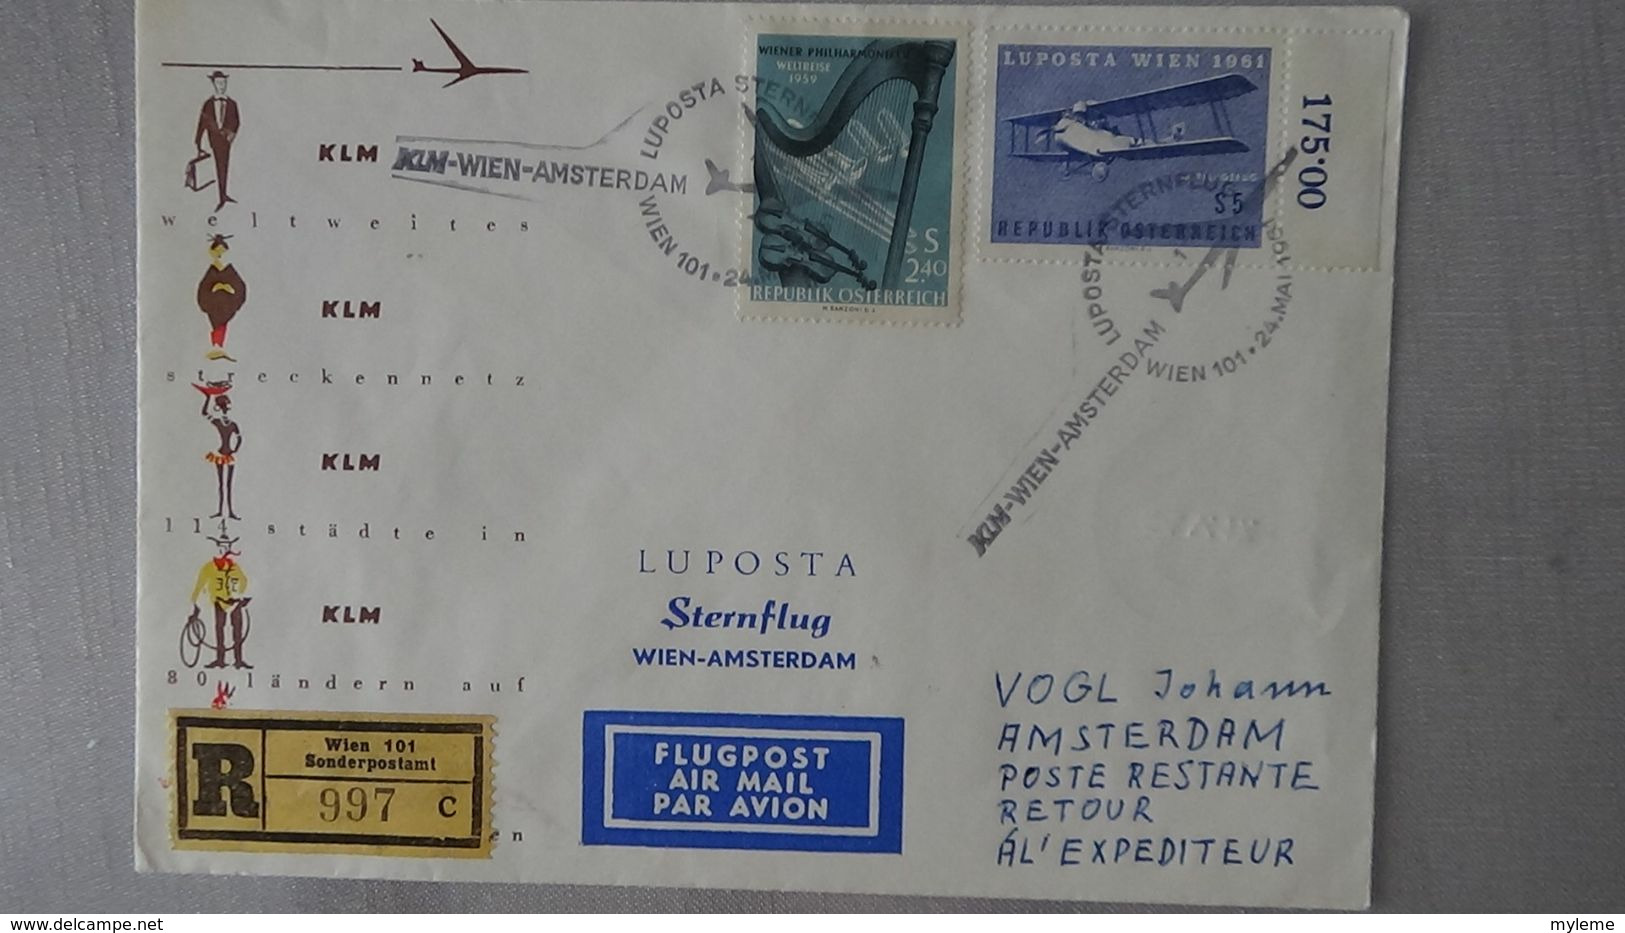 G120 Carton 27 kgs de plusieurs centaines de cartes postales, courrier dont Europa, aviation .....Voir commentaires !!!